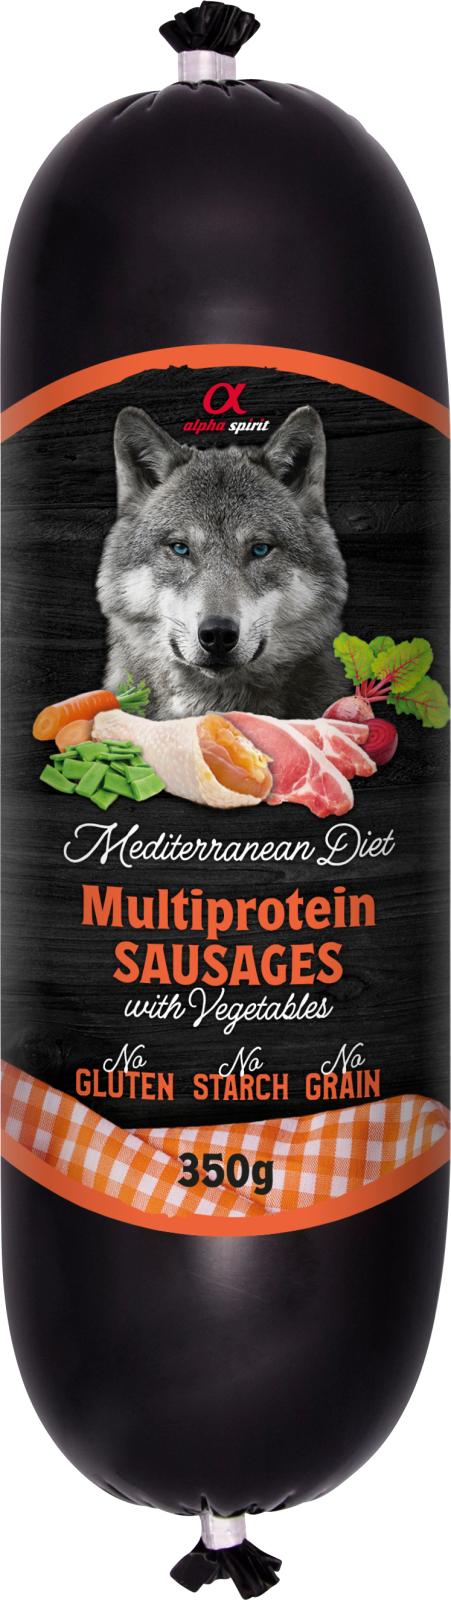 Alpha Spirit Mediterranean Multiprotein Sausage with Vegs 350g